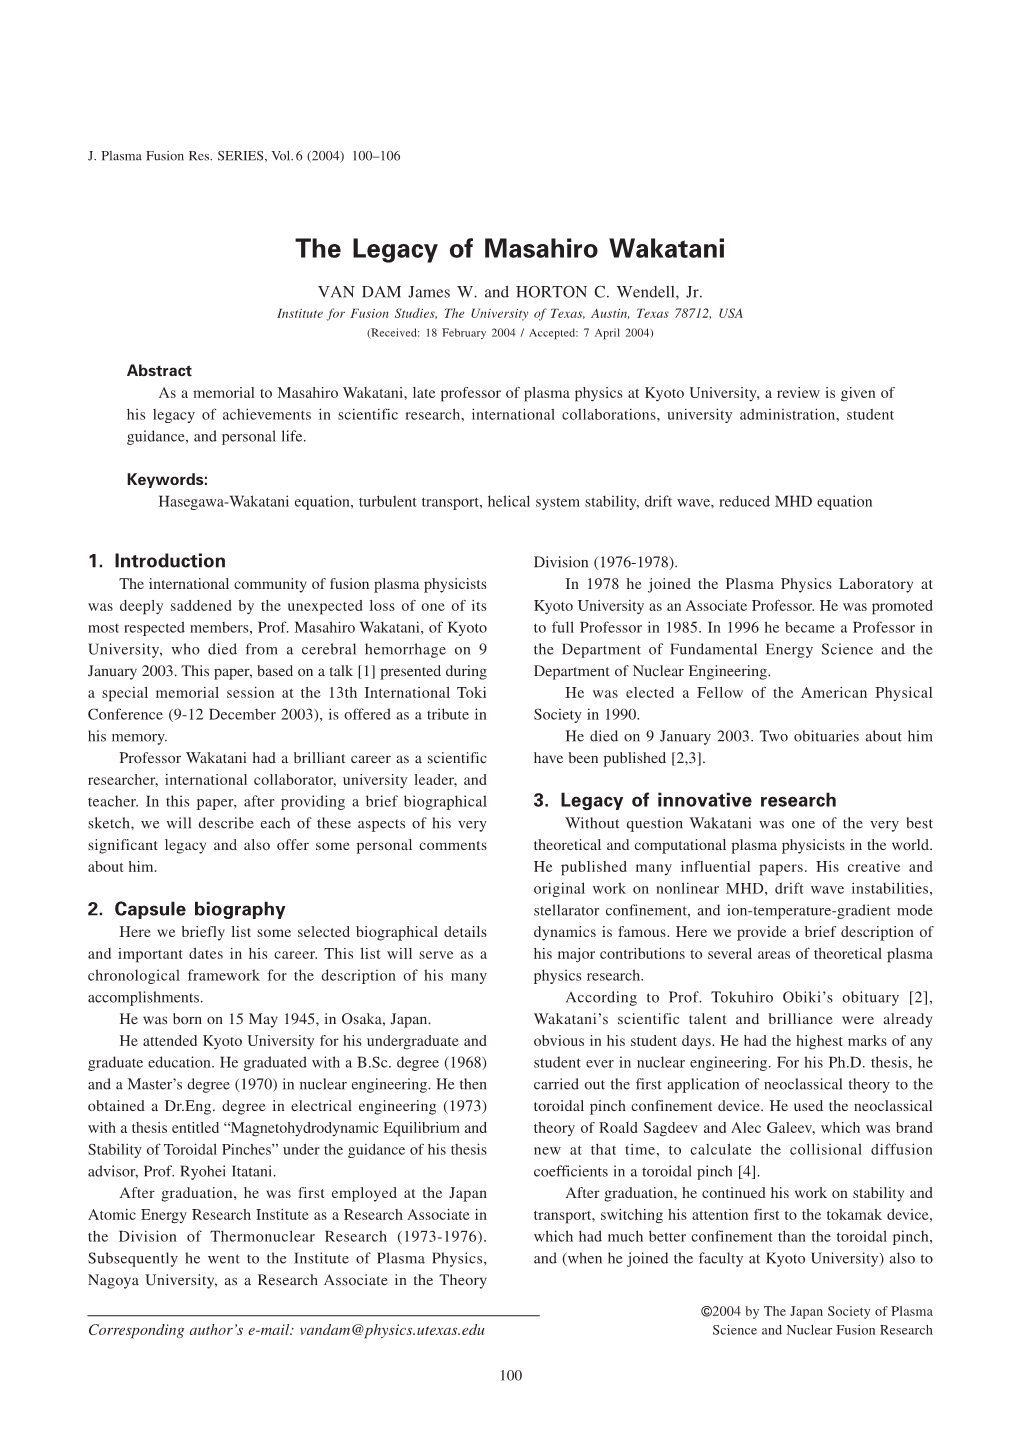 The Legacy of Masahiro Wakatani